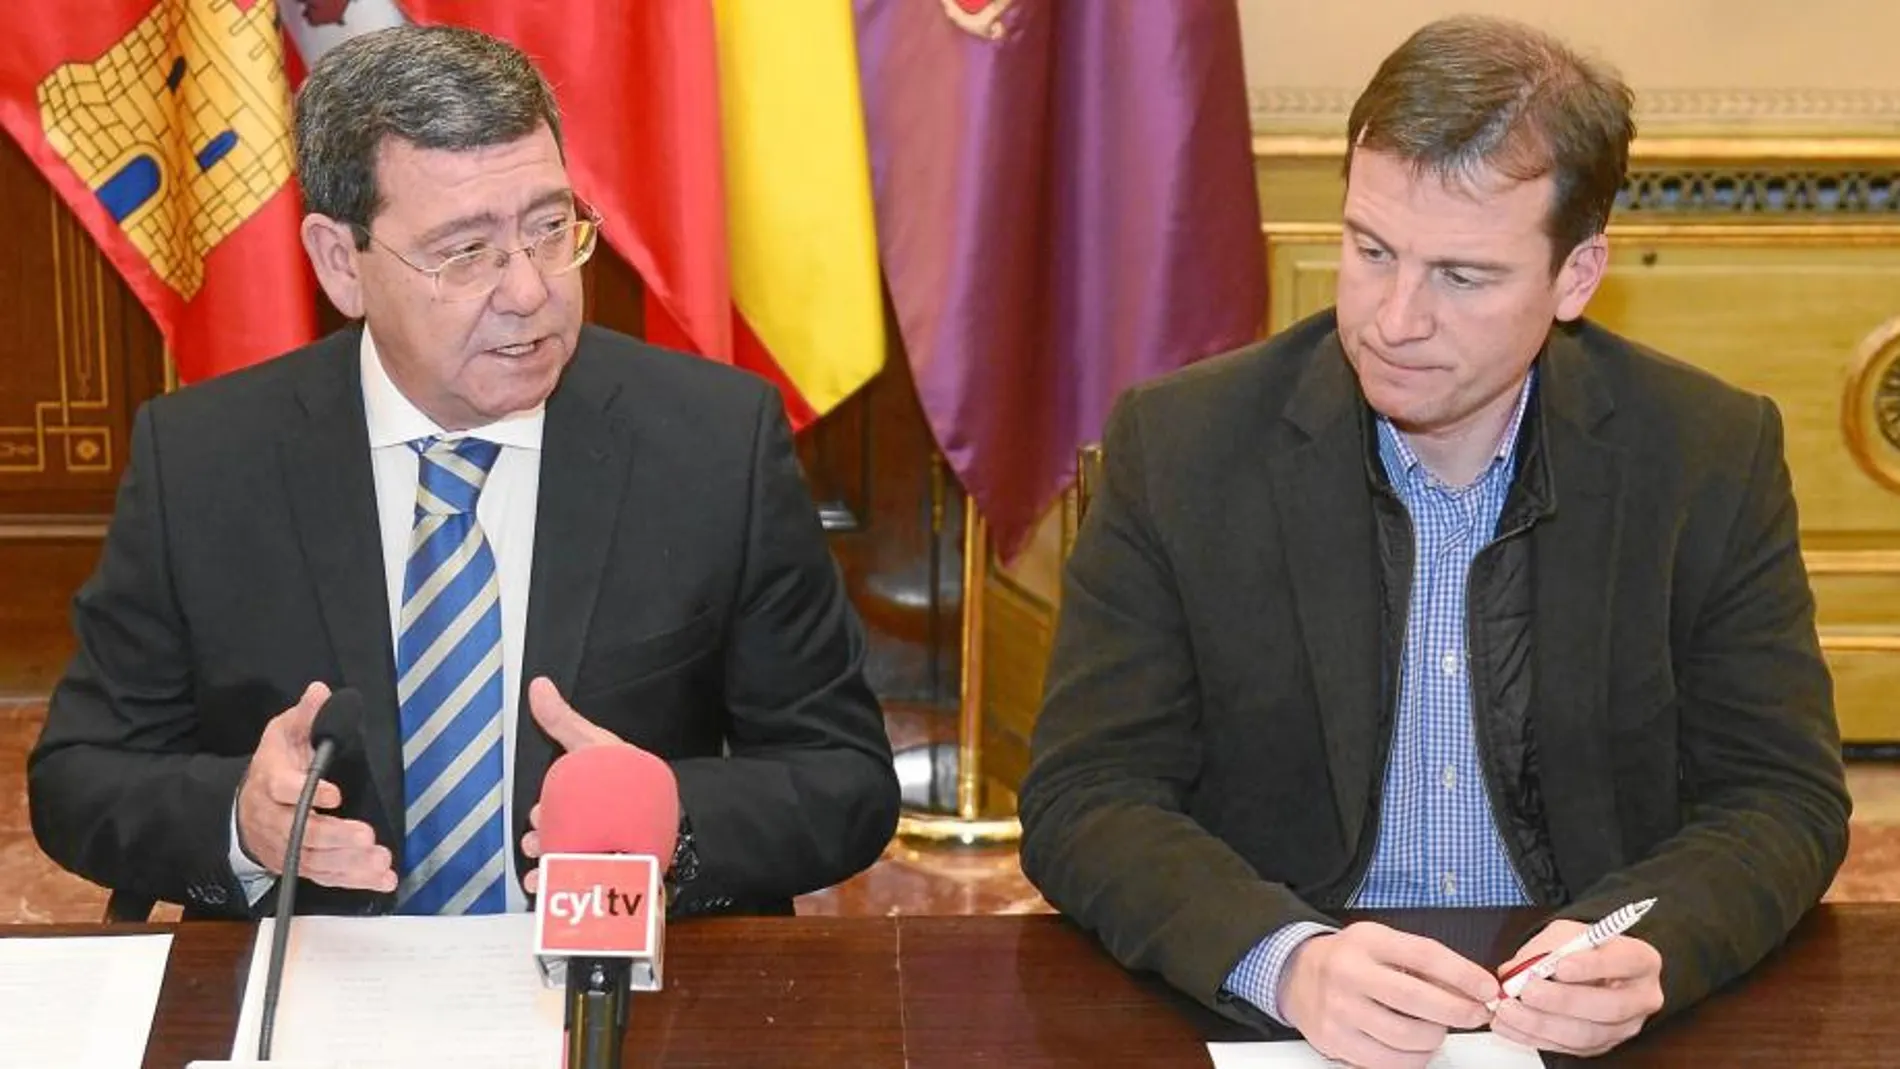 El presidente de la Diputación de Burgos, César Rico, comparece junto al diputado Borja Suárez ante la prensa, para hacer balance de la actividad de la institución durante el pasado año